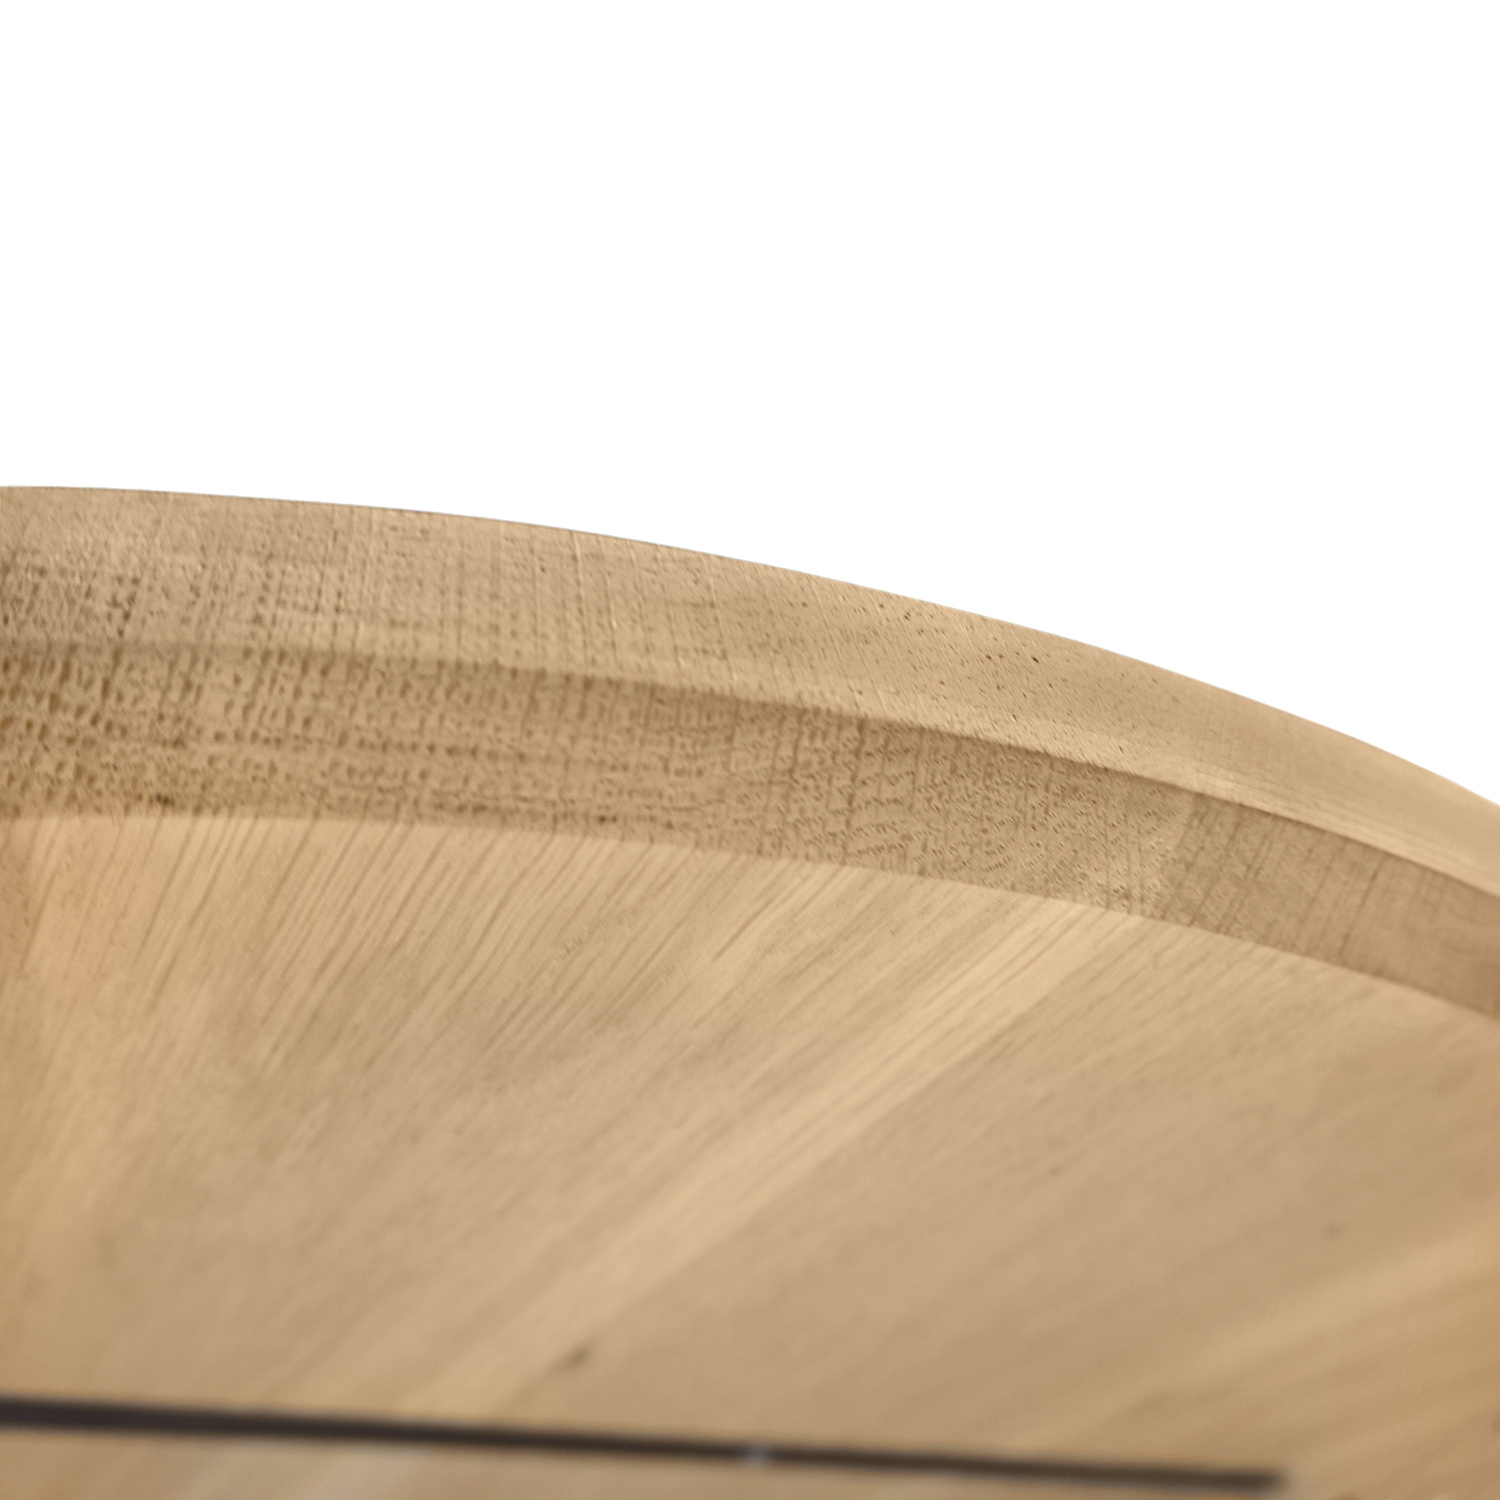  Ovaal eiken tafelblad op maat - 4 cm dik (1-laag) - extra rustiek Europees eikenhout - met extra brede lamellen (circa 14-20 cm)nhout - verlijmd kd 8-12% - 40-117x80-247 cm